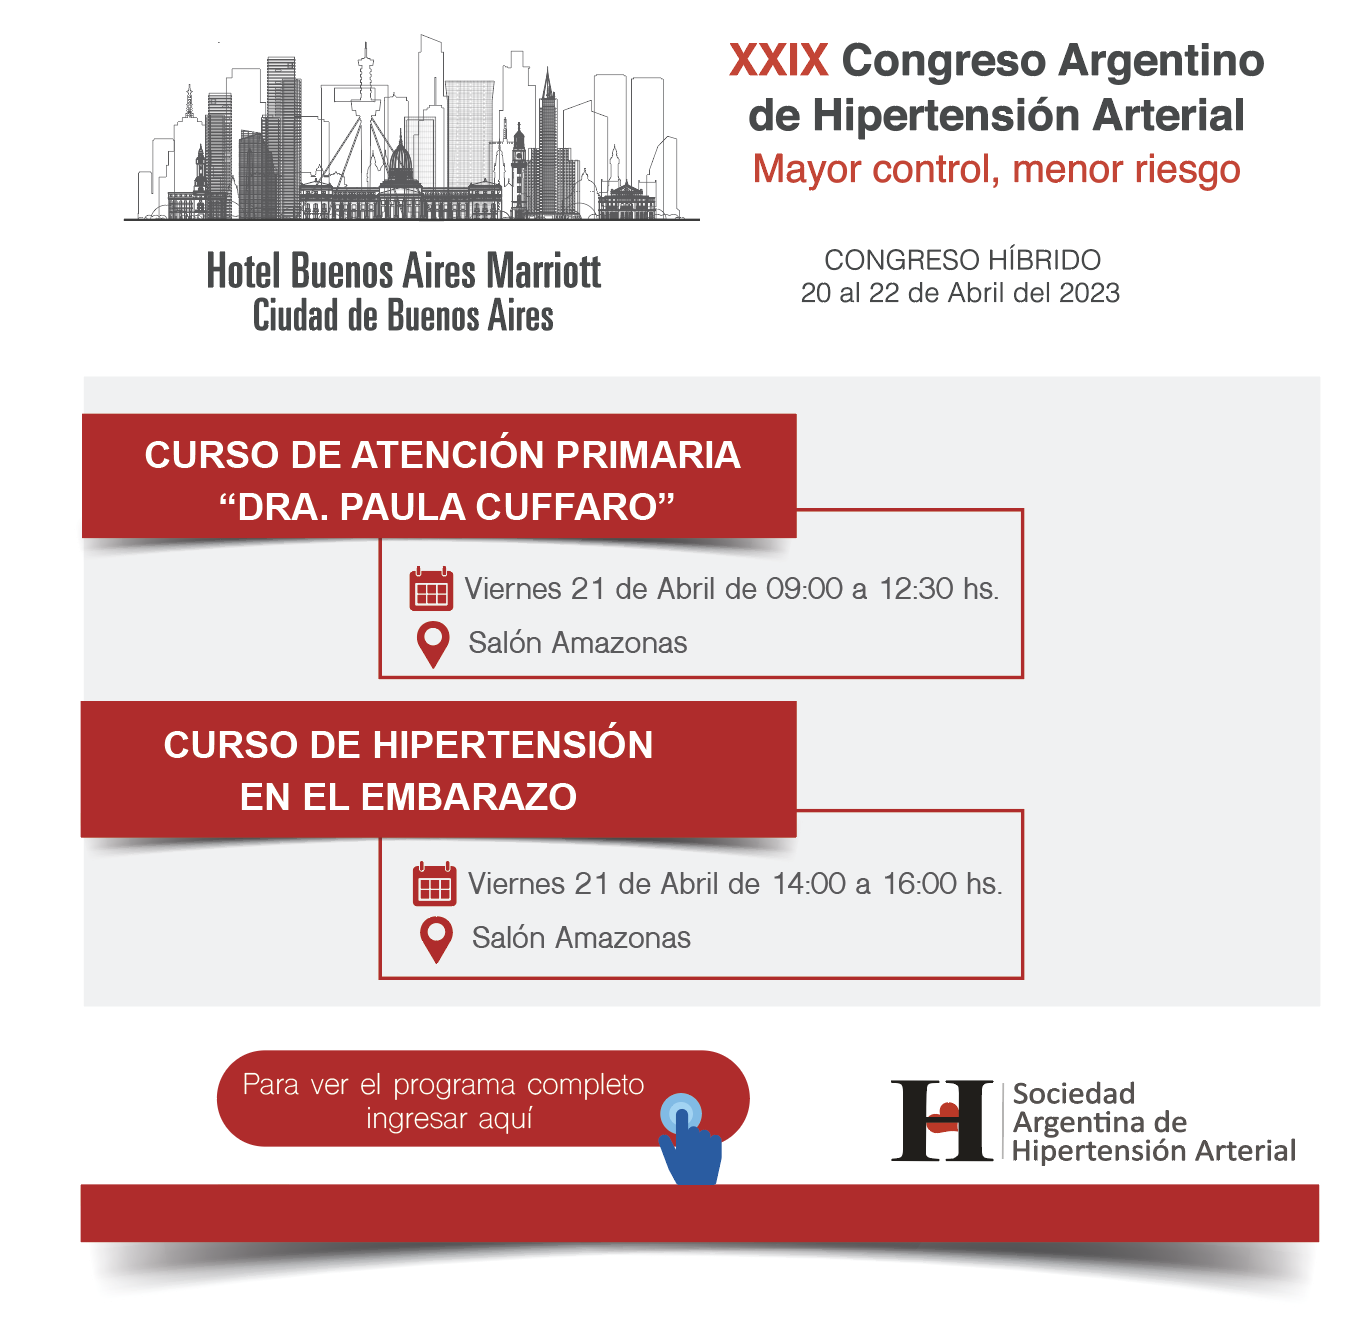 XXIX Congreso, Buenos Aires 2023